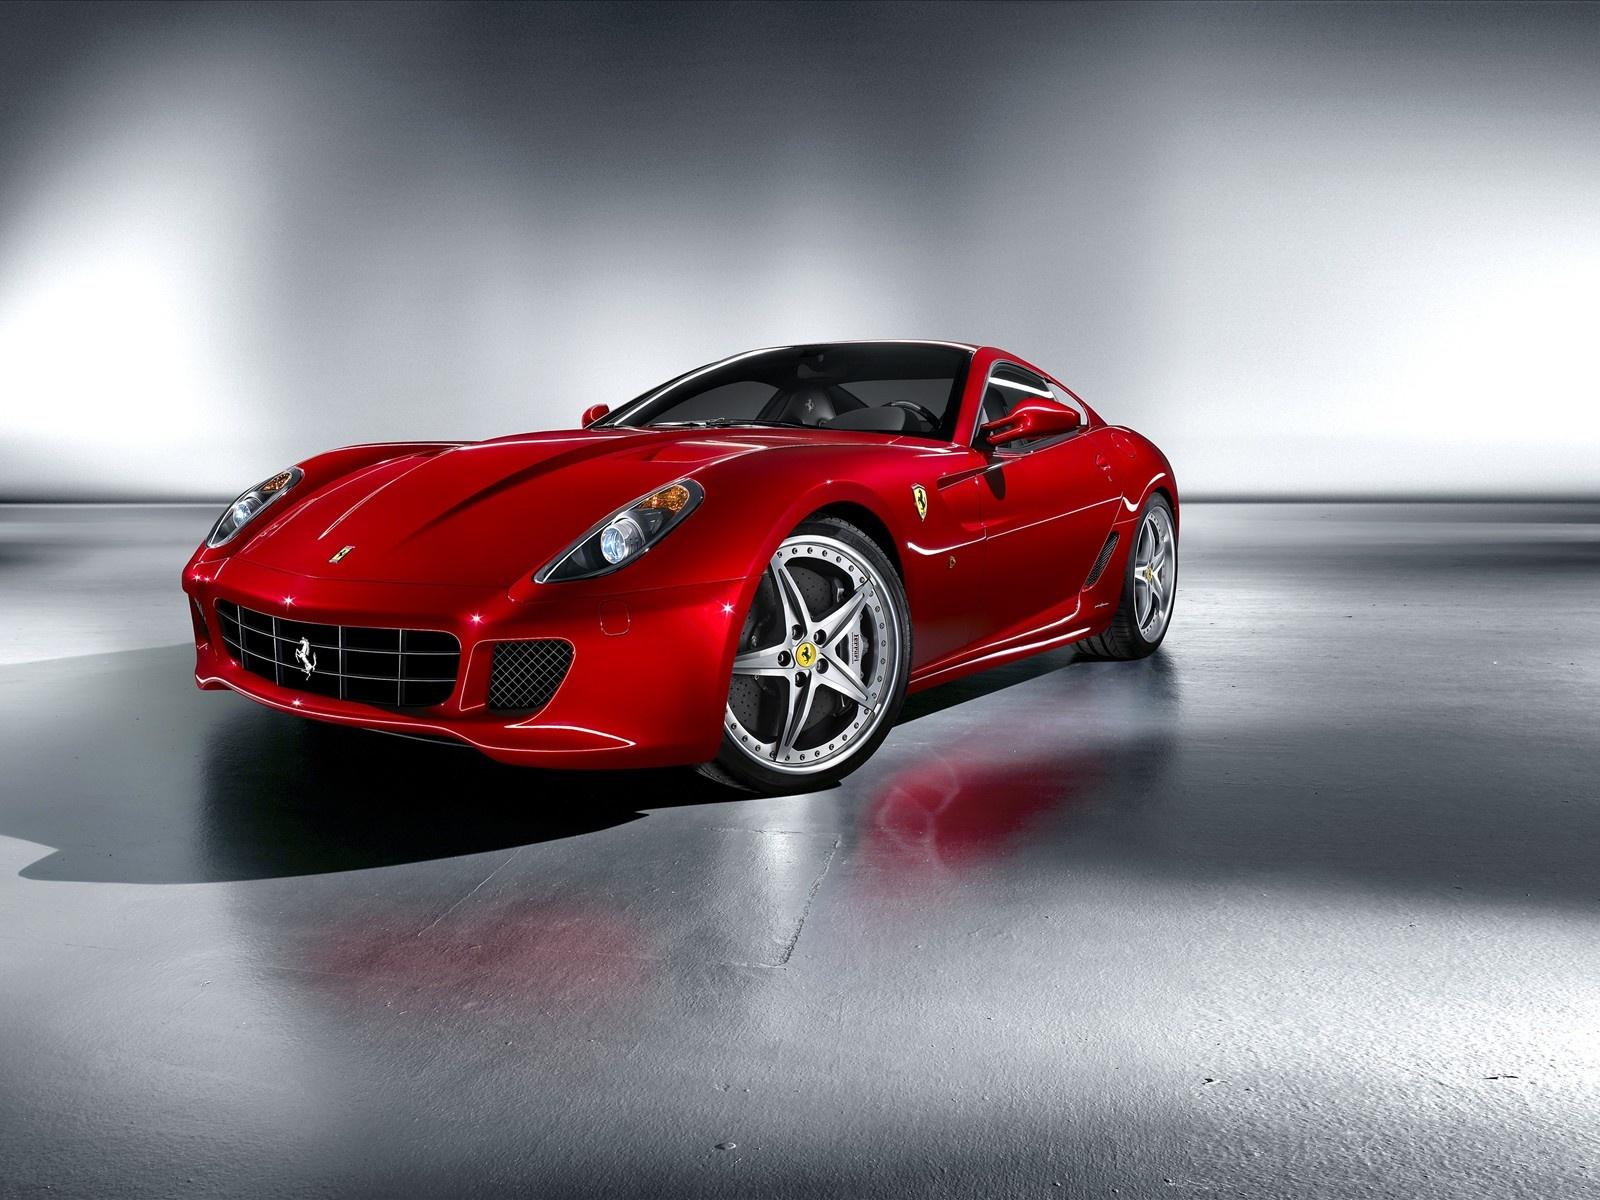 Ferrari Red Car Wallpaper in jpg format for free download